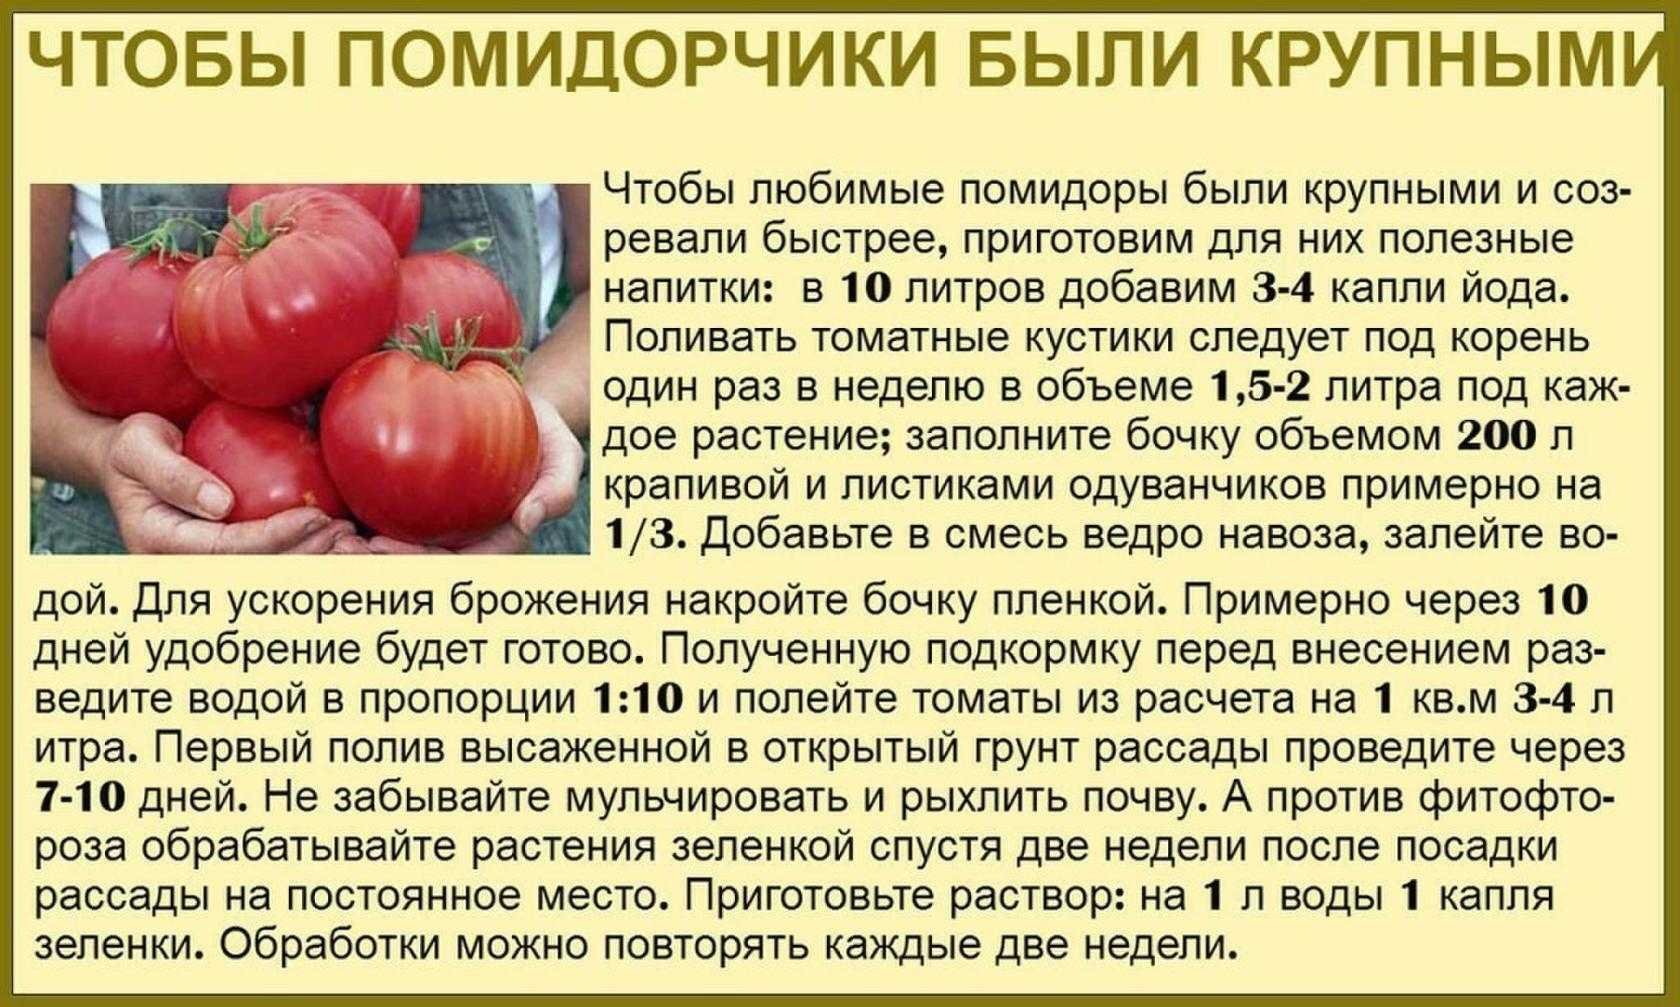 Можно ли помидорам золу. Таблица подкормки томатов. Советы садоводам и огородникам. Советы про томаты. Советы для огородников.